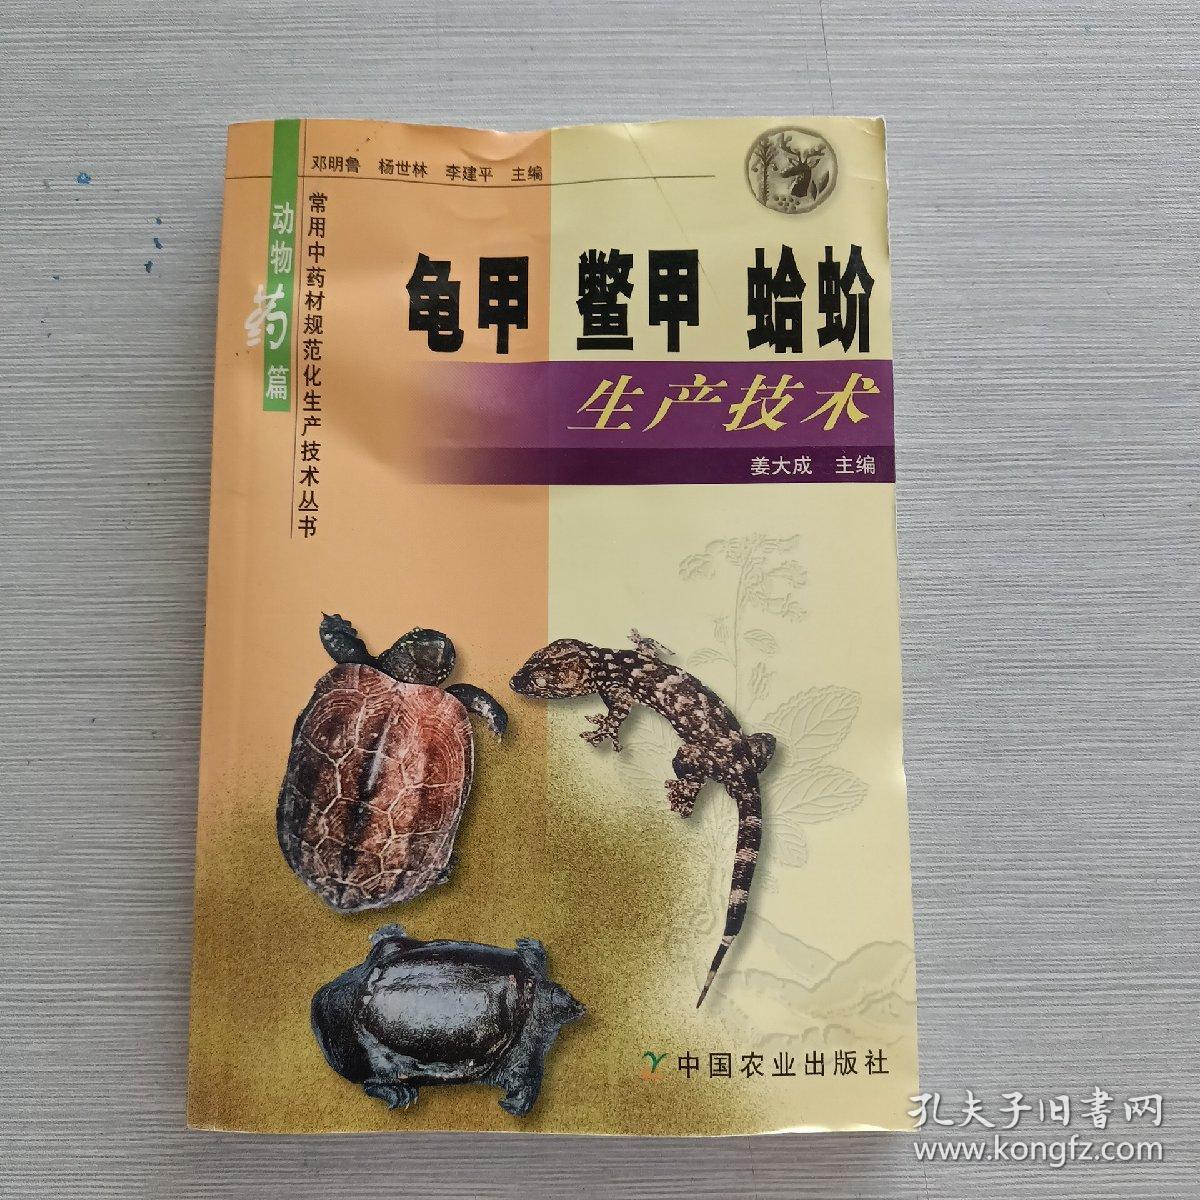 龟甲、鳖甲、蛤蚧生产技术——常用中药材规范化生产技术丛书